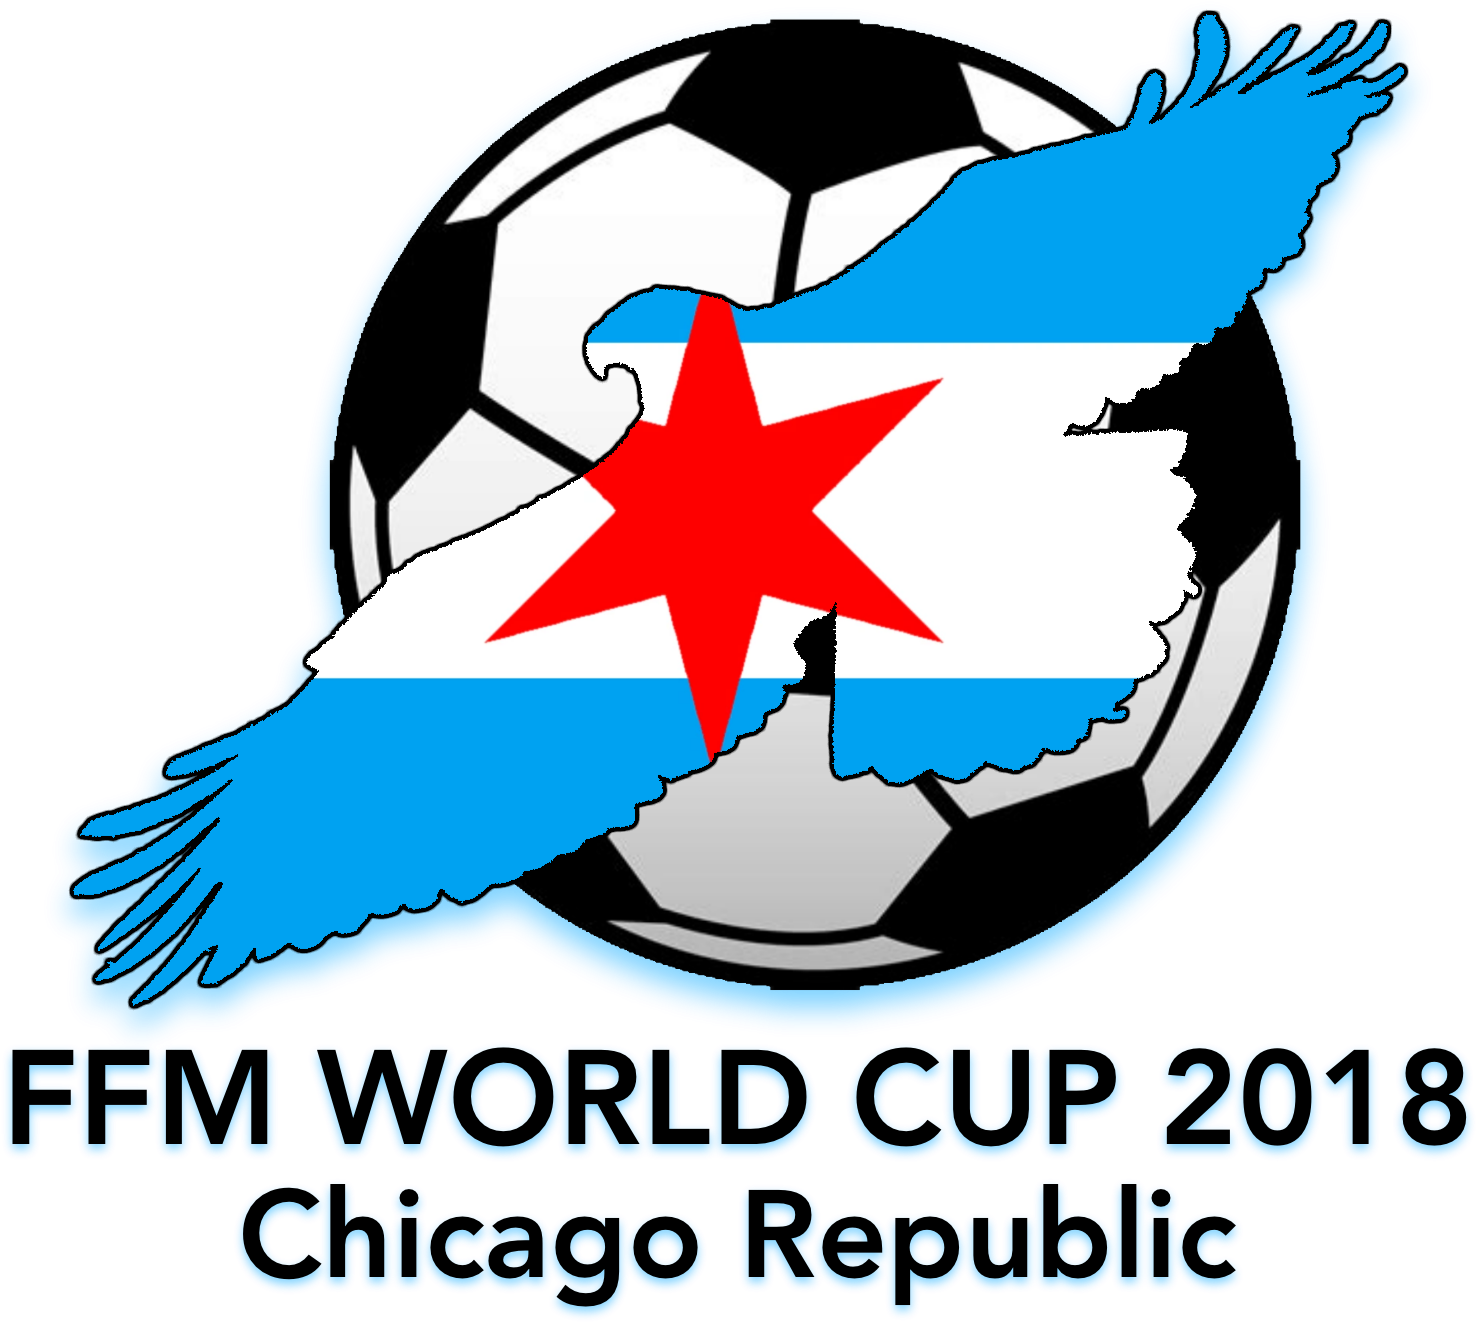 Chicago Republic - Sello De Pelota De Futbol (2000x1500), Png Download